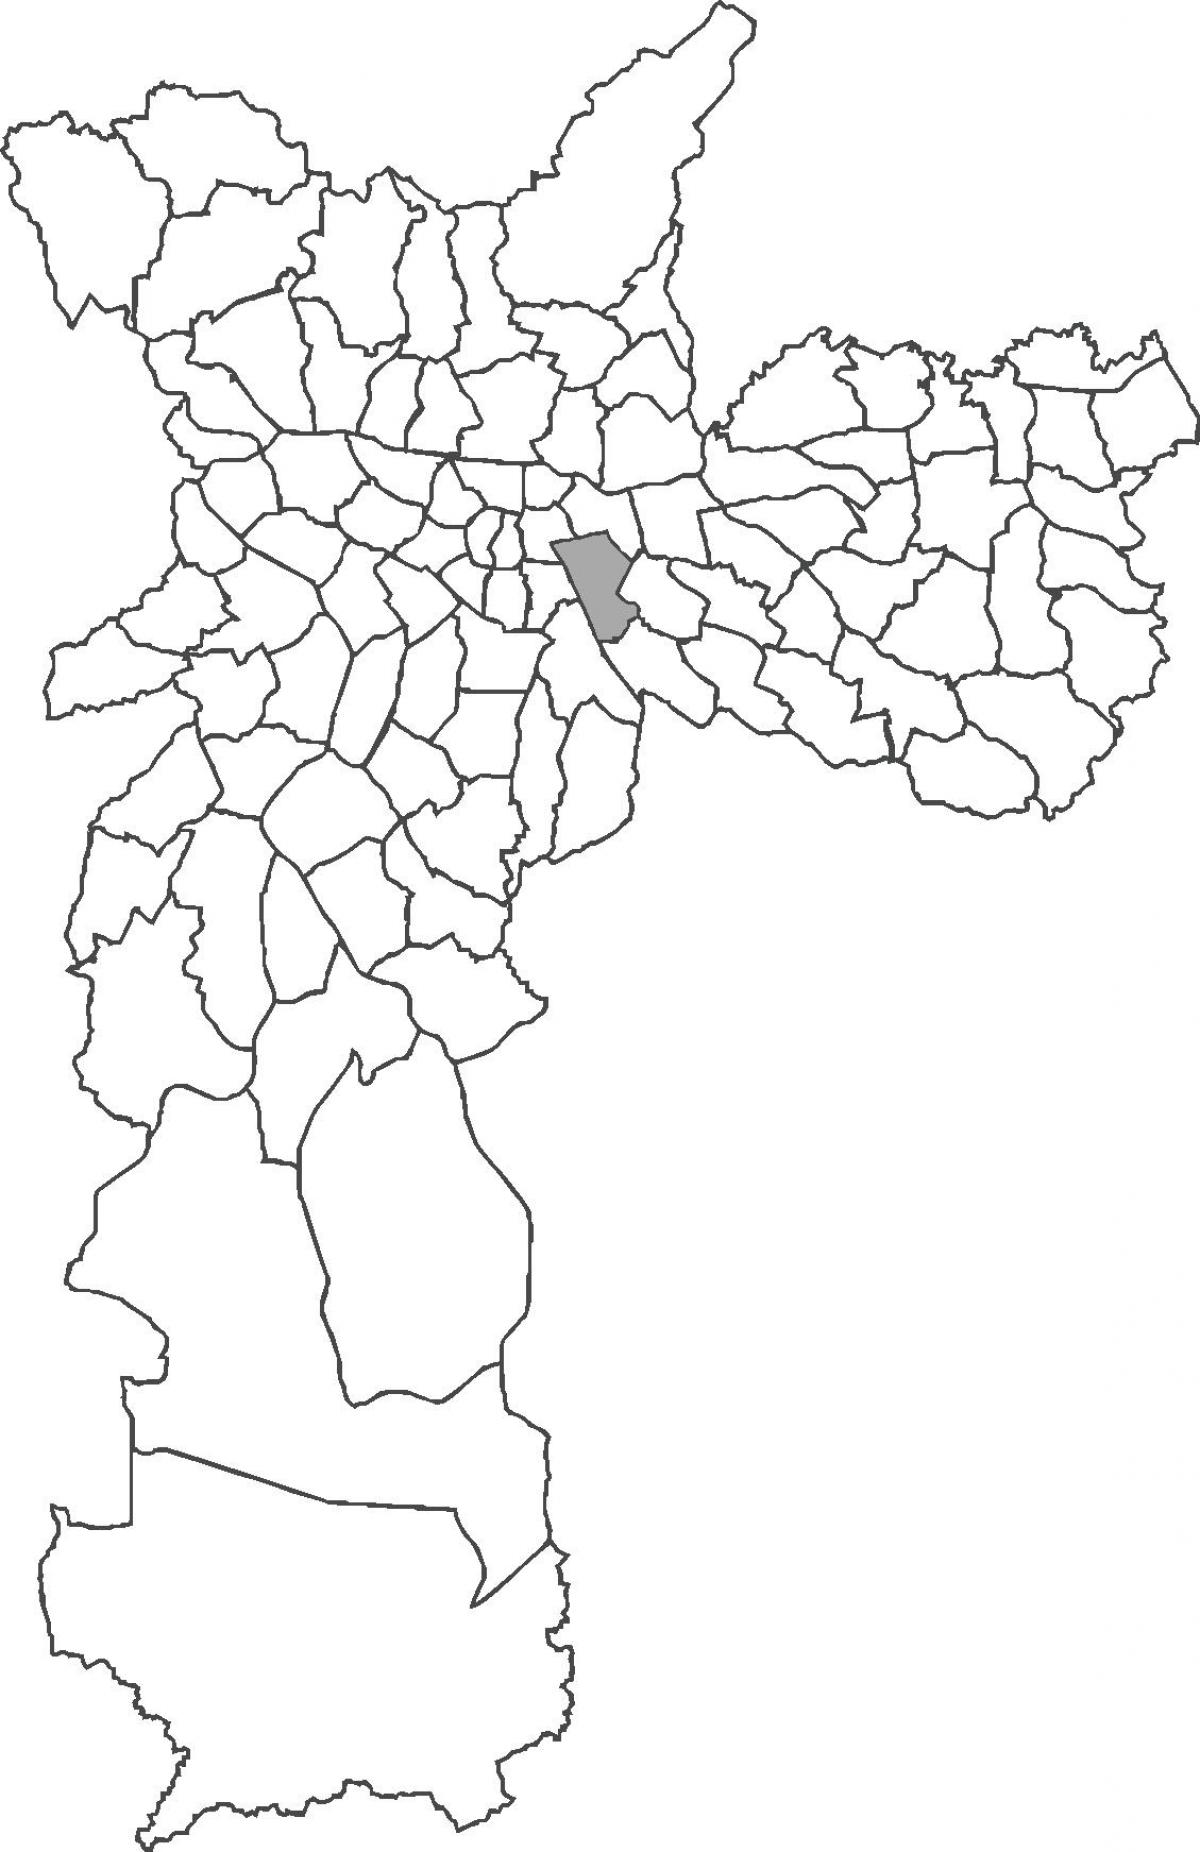 Mapa do bairro da Mooca